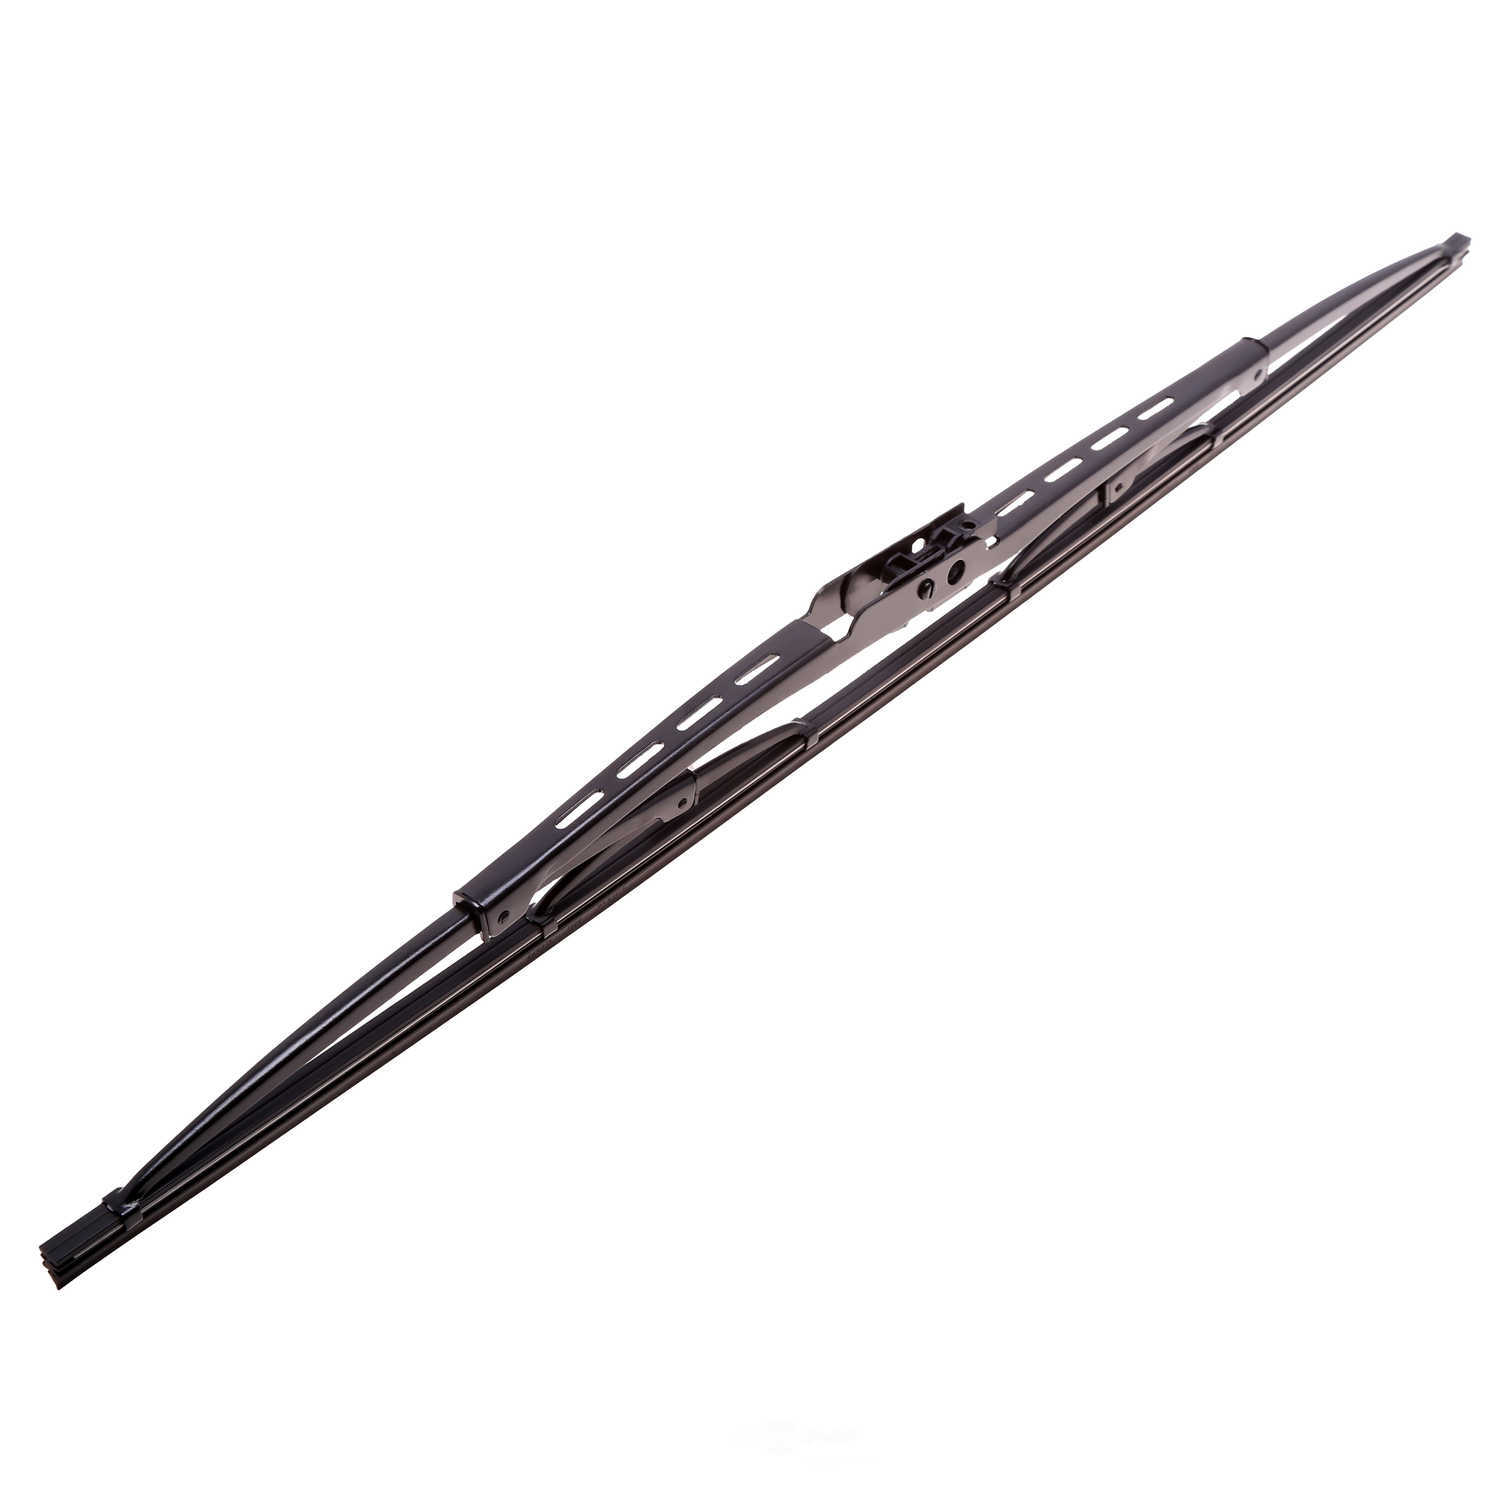 ANCO WIPER PRODUCTS - ANCO 31-Series Wiper Blade - ANC 31-20